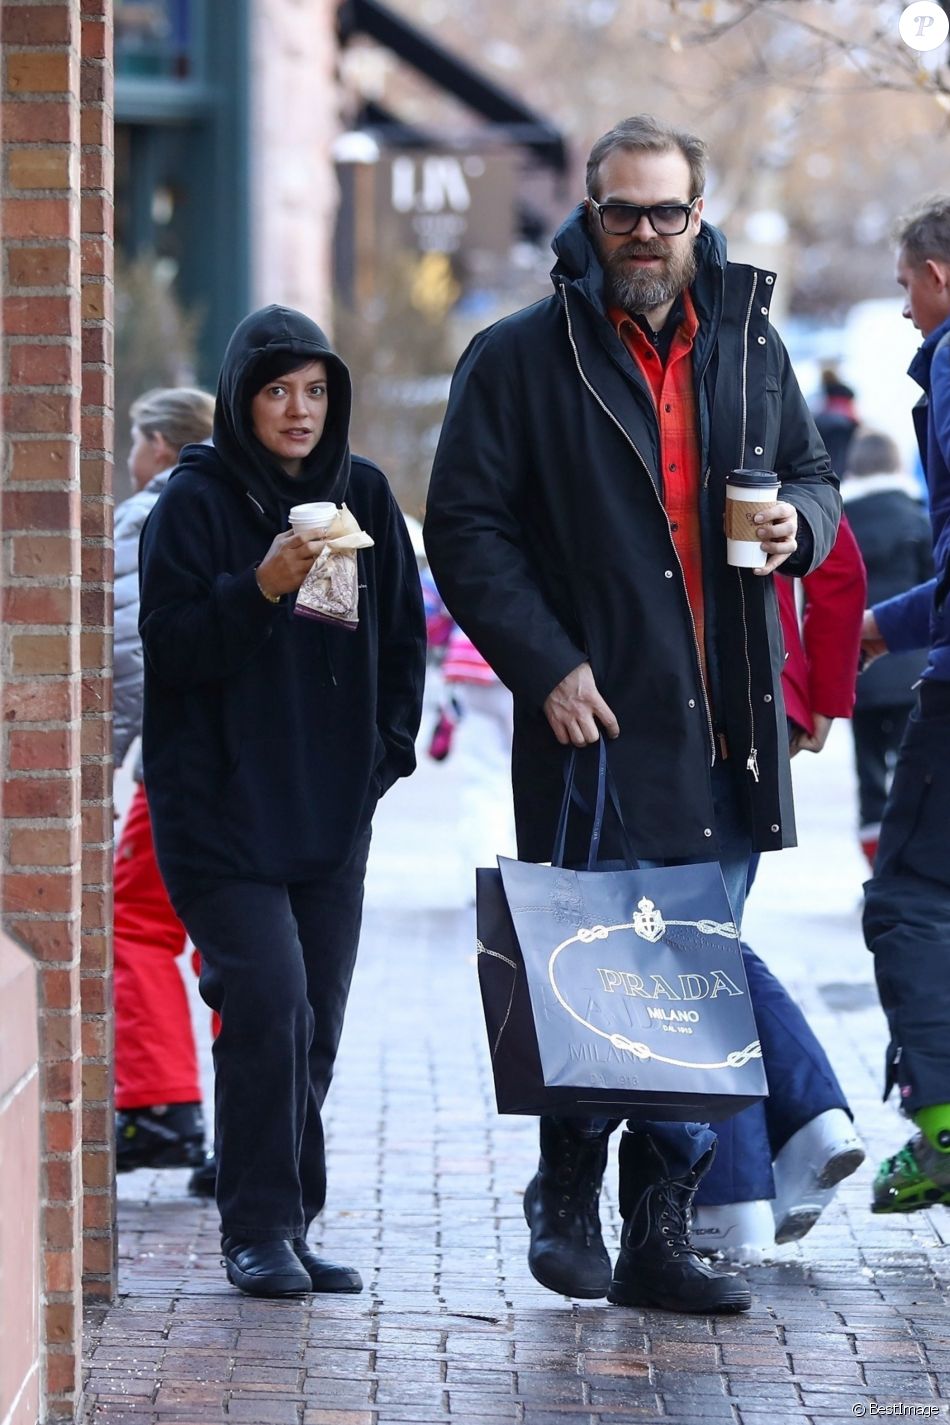 Exclusif - Lily Allen et son compagnon David Harbour font du shopping à Aspen, Colorado, États-Unis, le 4 janvier 2020.